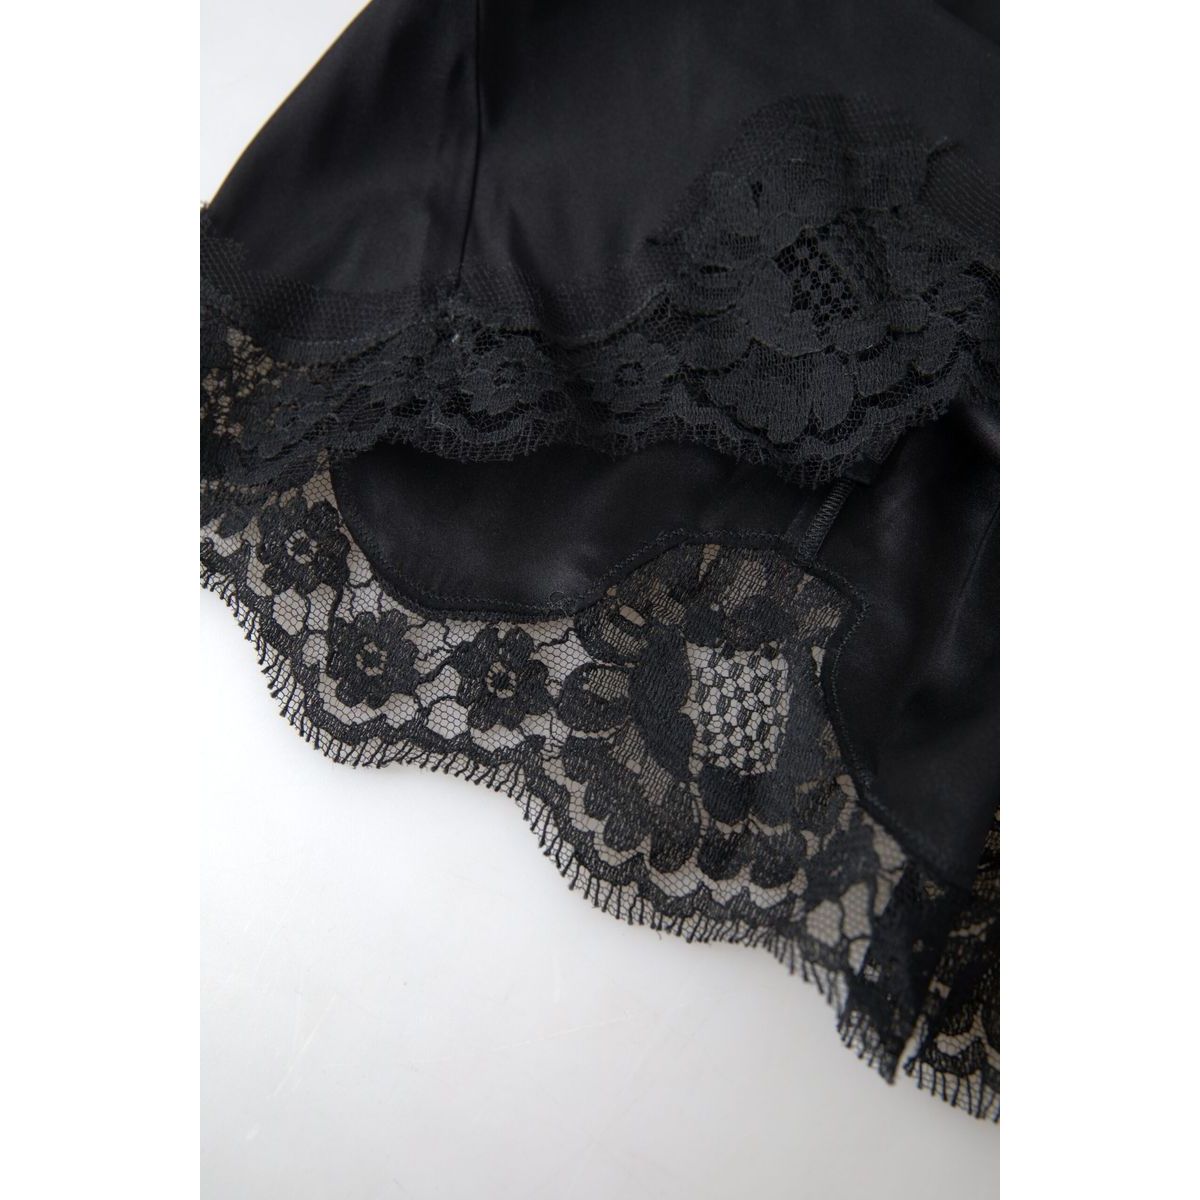 Dolce & Gabbana Elegant Black Silk Blend Camisole black-lace-silk-sleepwear-camisole-underwear